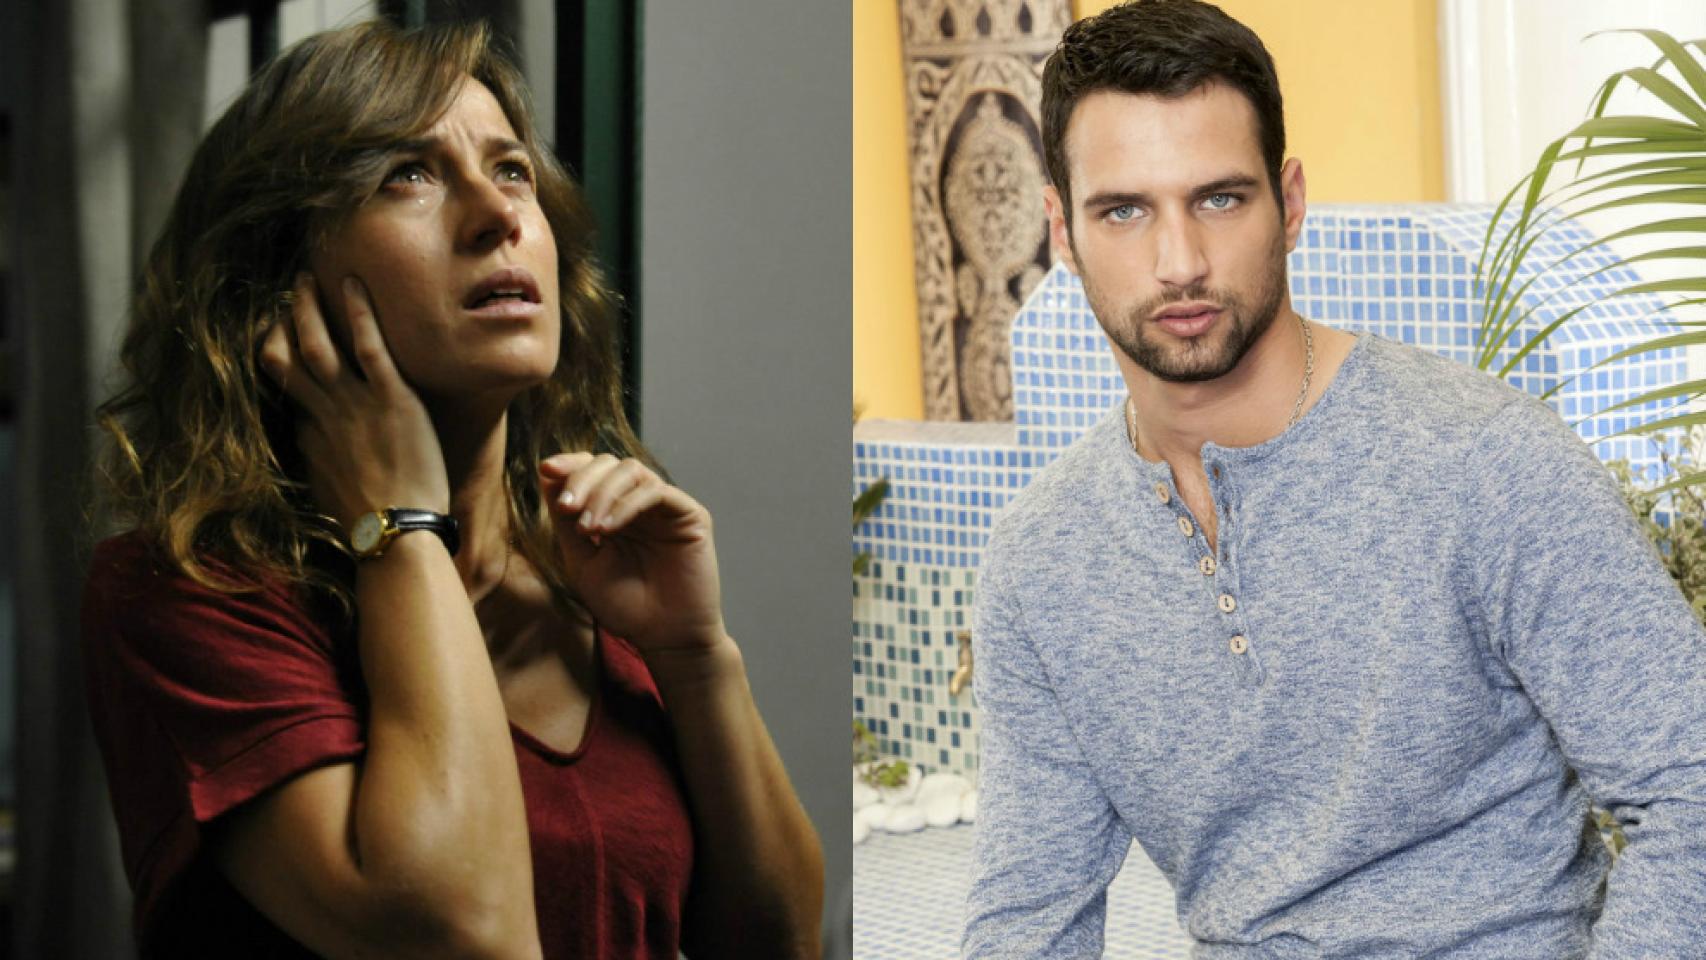 Antena 3 contesta a sus actores más díscolos: Jesús Castro y Marta Etura